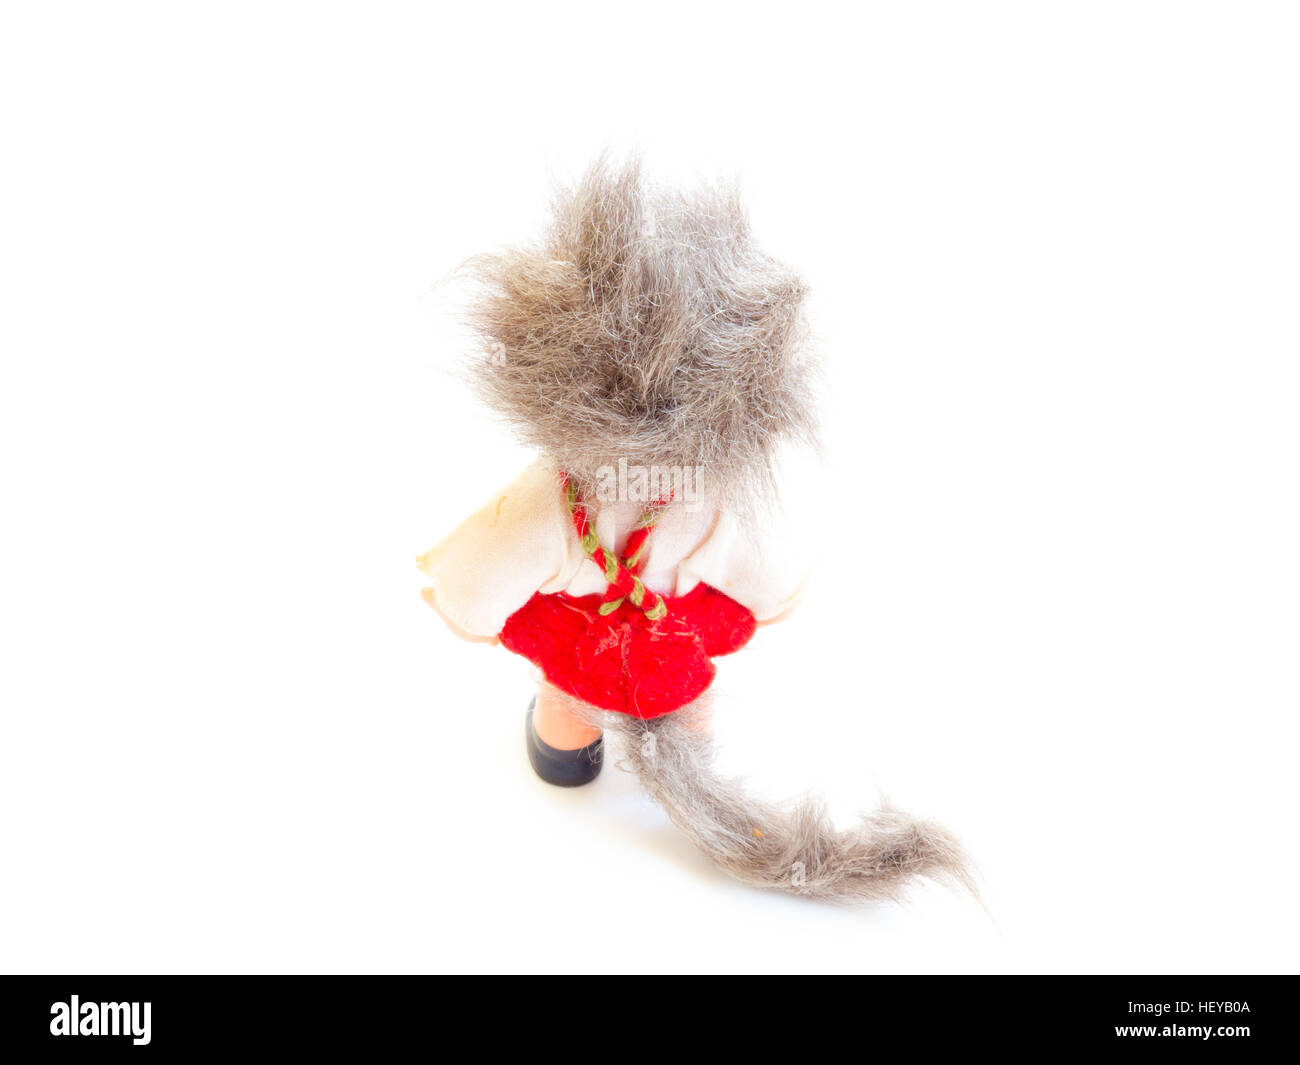 Die Miniatur Spielzeughund. Stockfoto